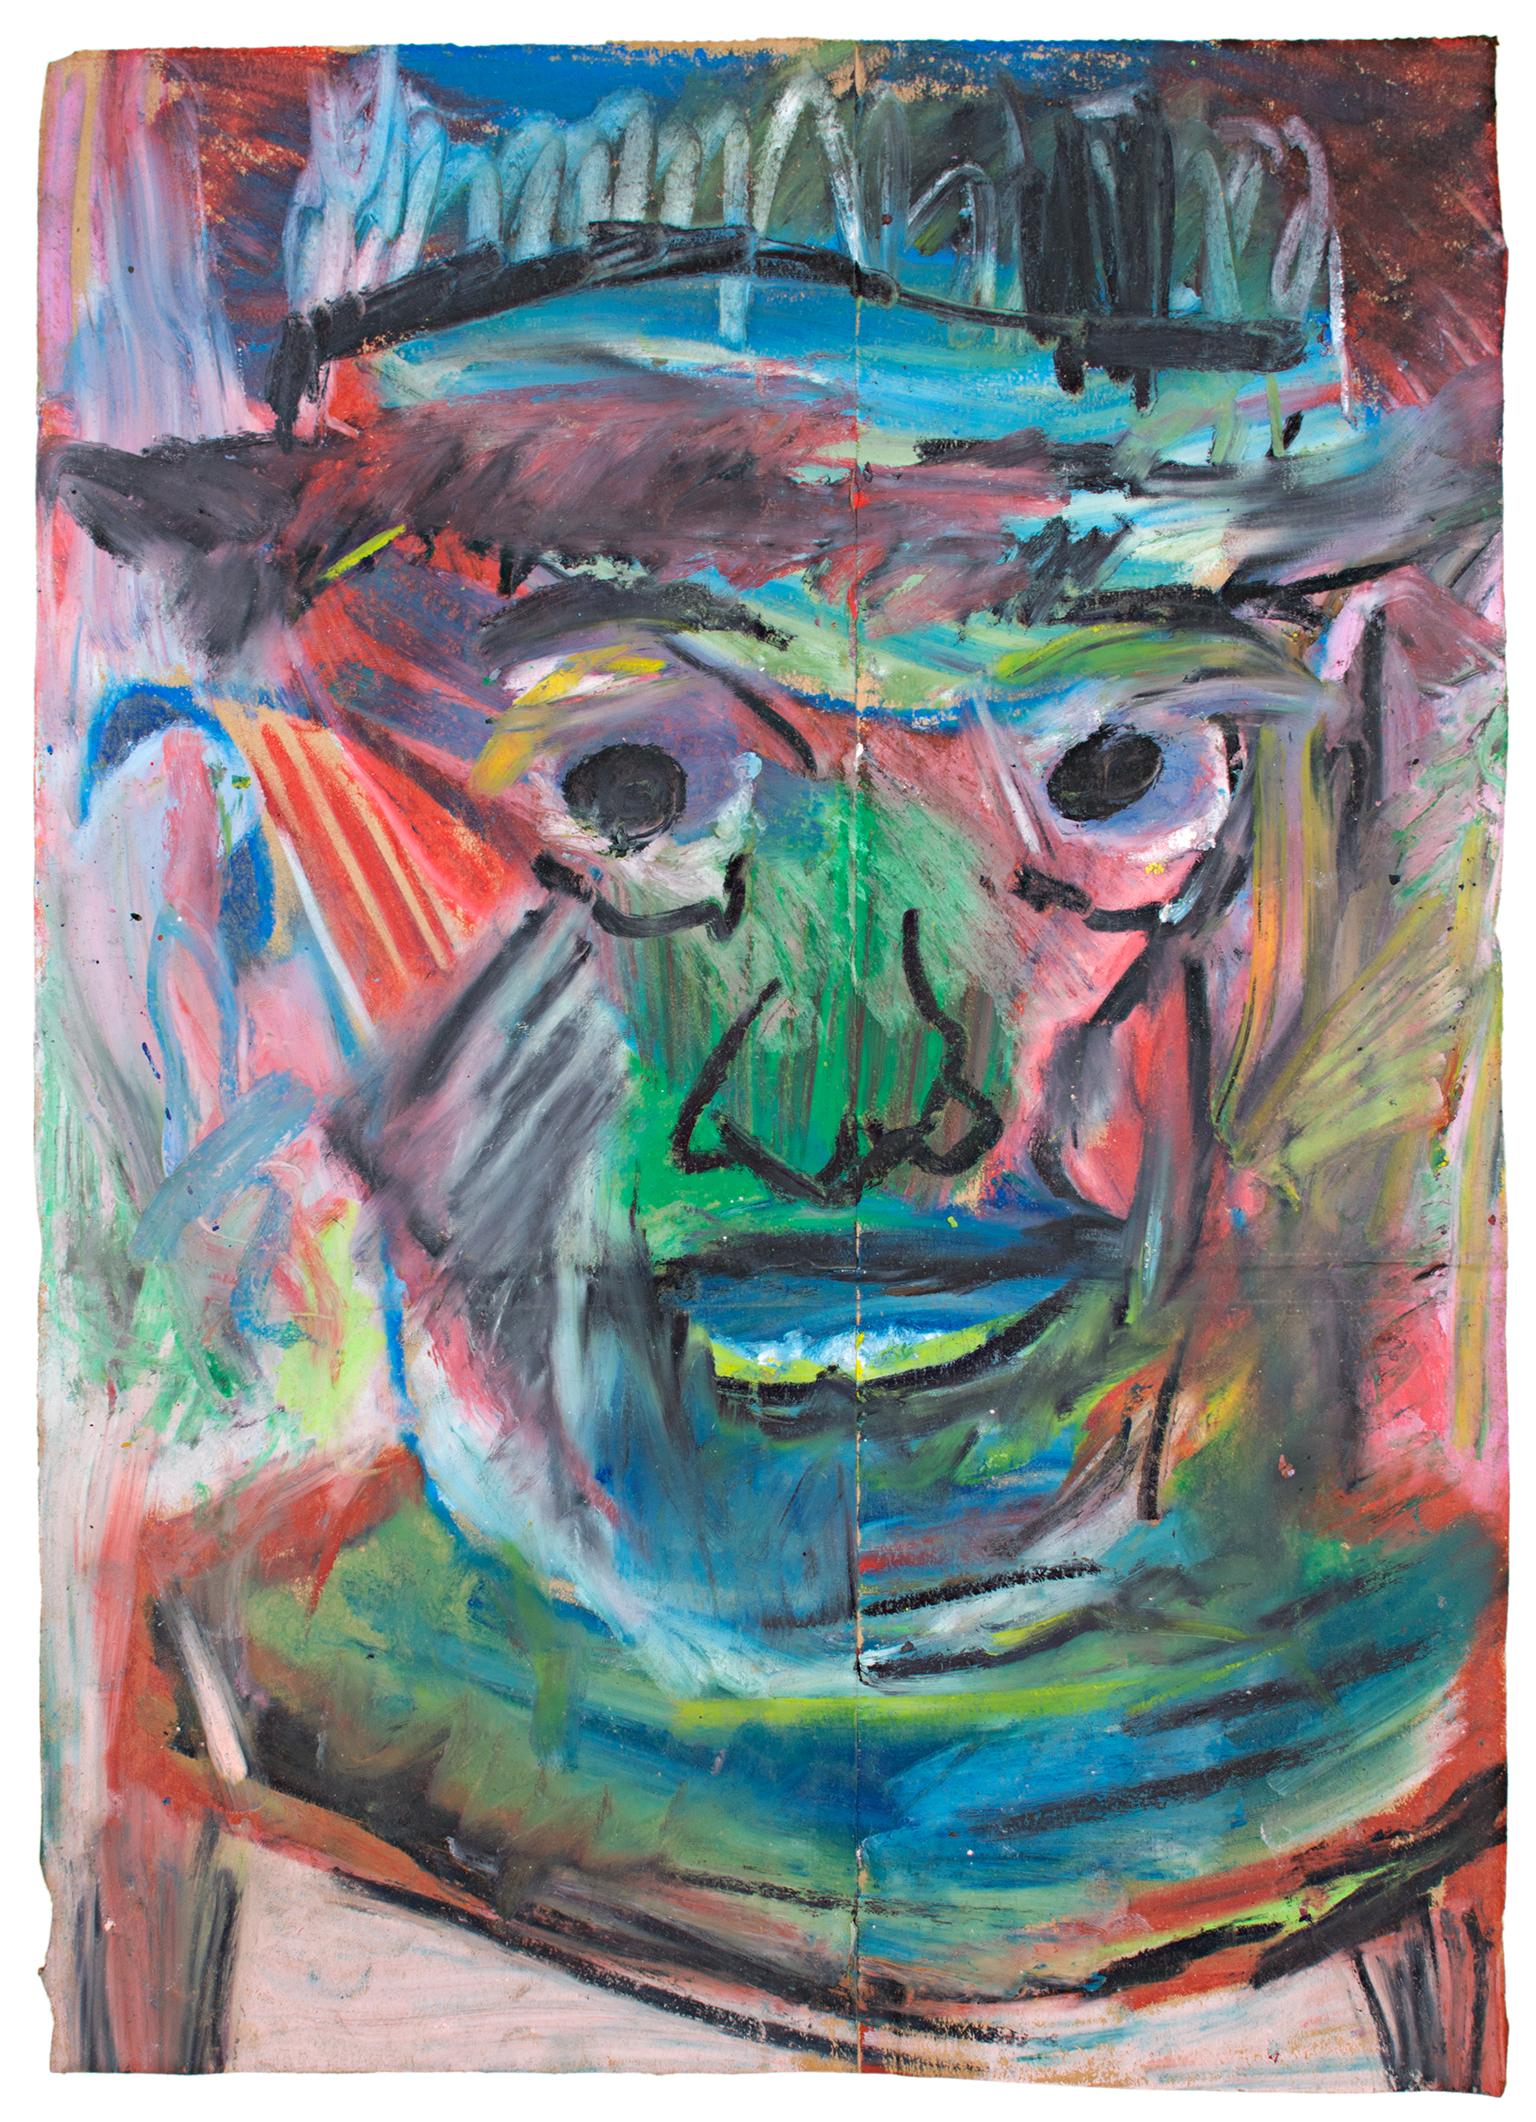 « Tarkan », portrait au pastel, dessin à l'huile sur sac en papier de Reginald K. Ge